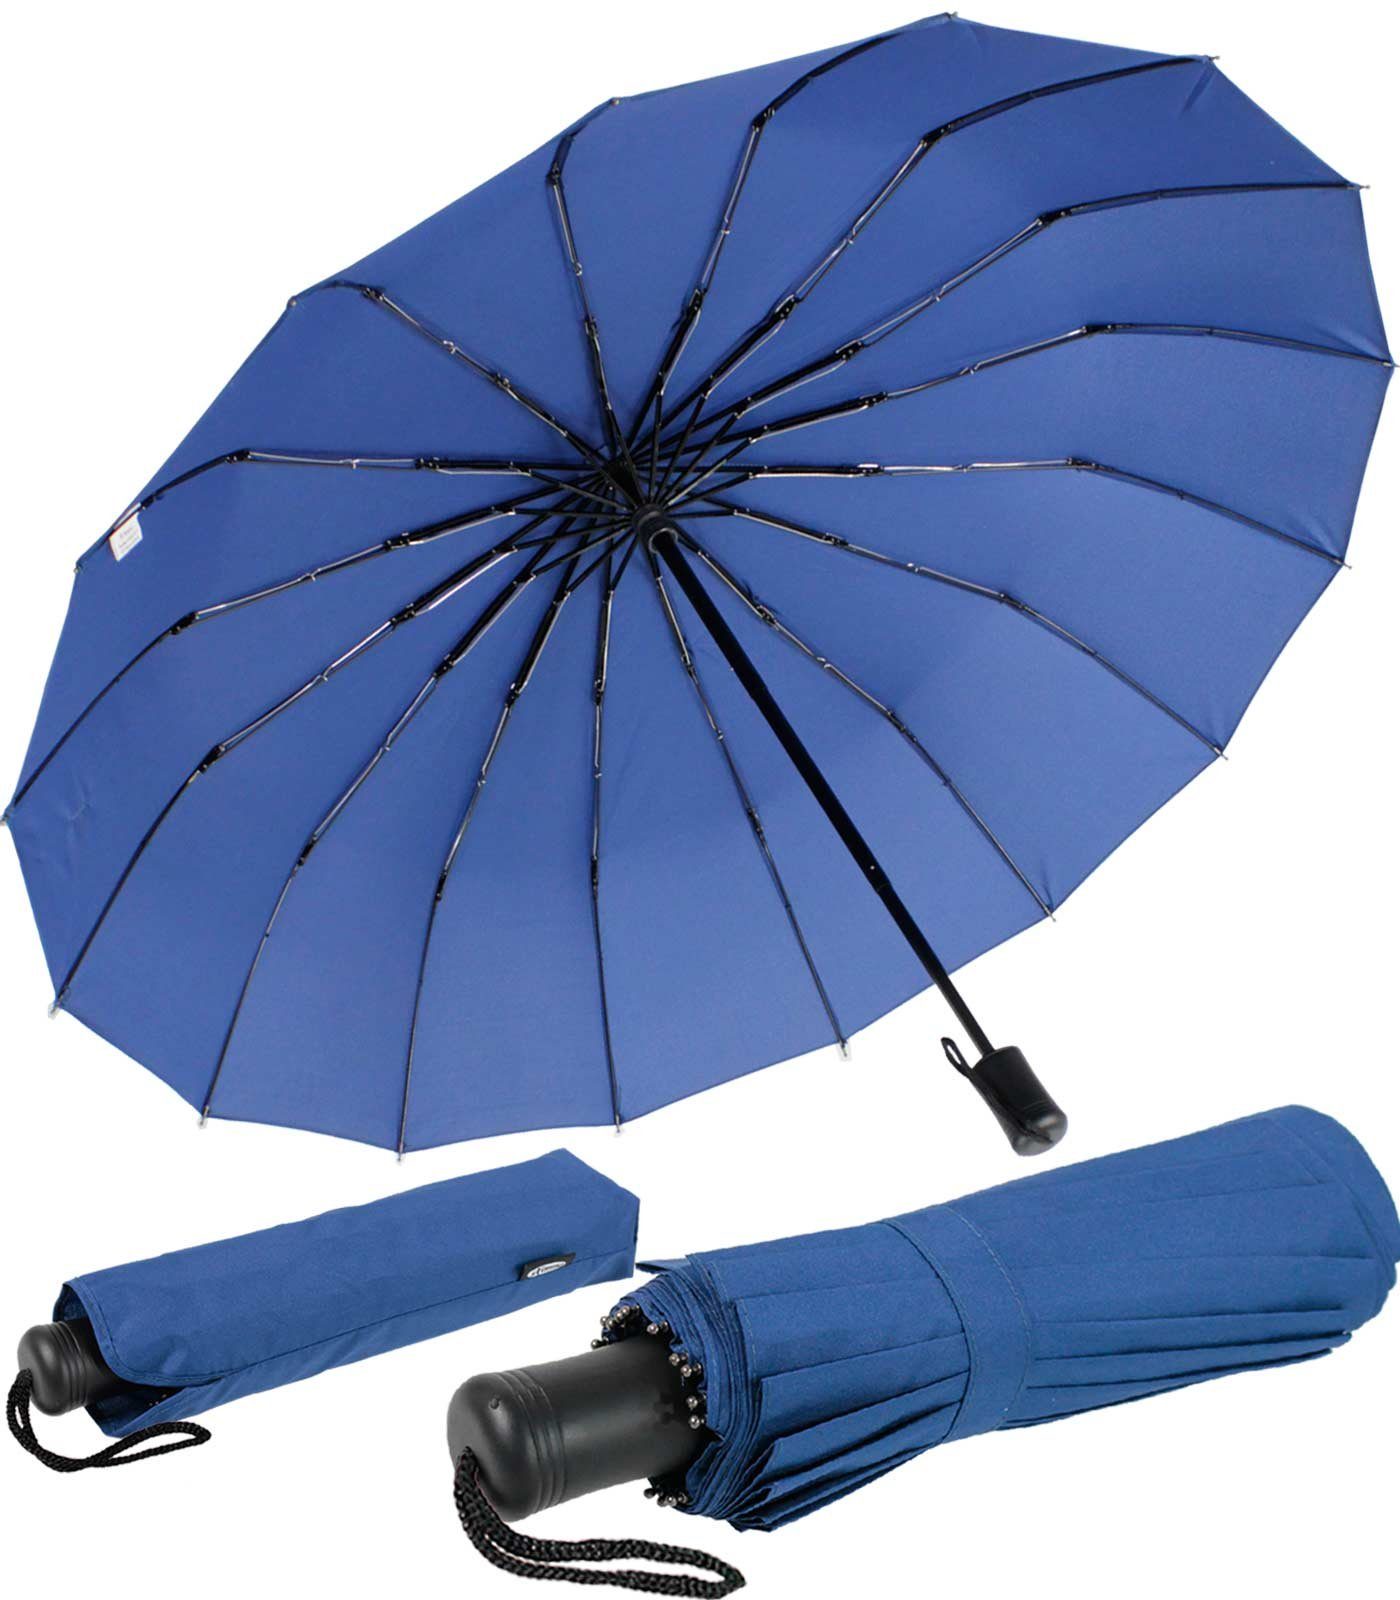 auffällig und Streben 16 farbenfroh, und iX-brella blau extra mit extravagant Taschenregenschirm Mini stabil